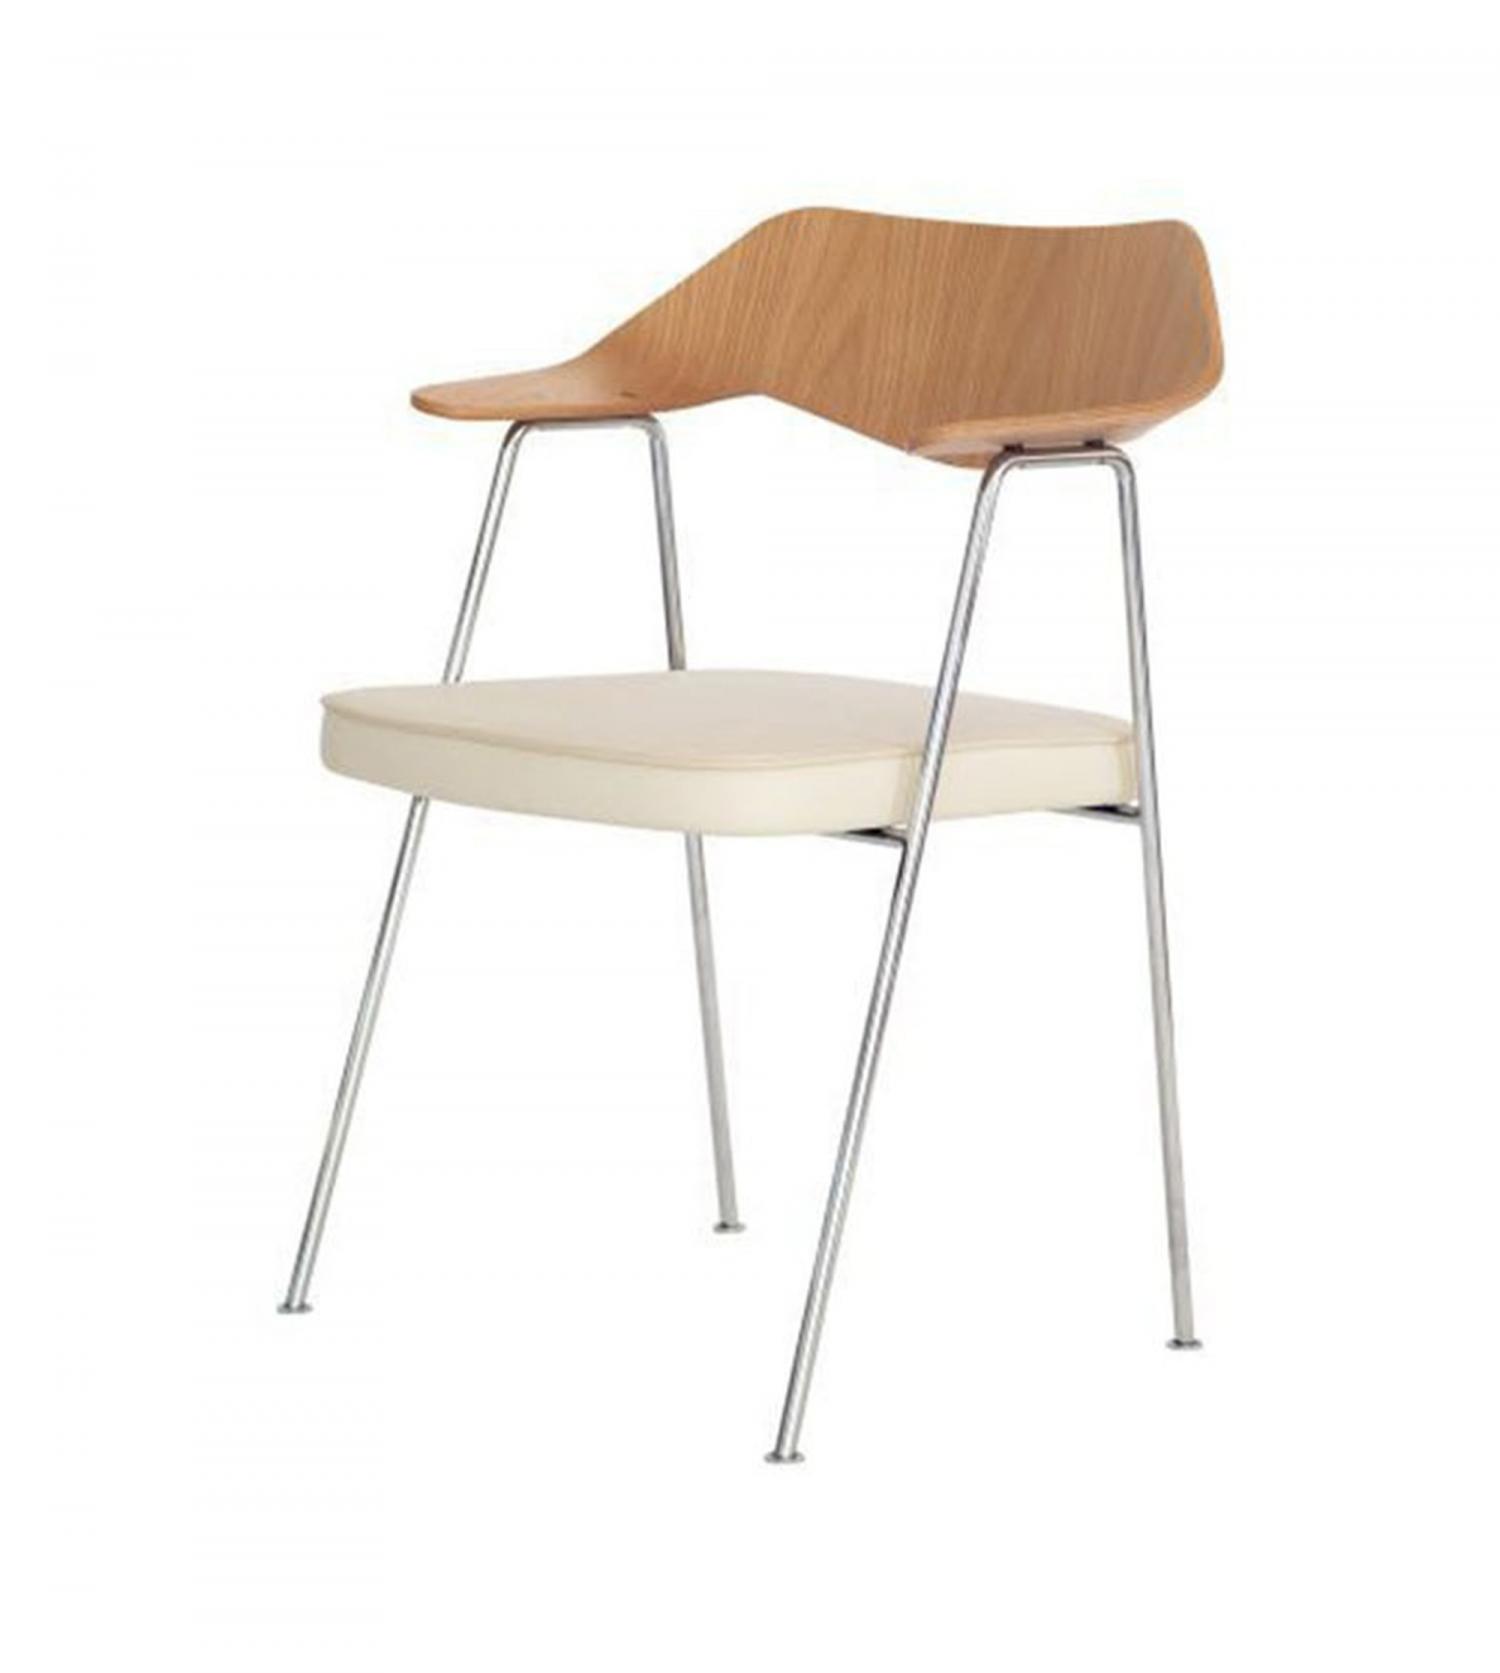 Blou-Chaise 675 - Robin Day Chair - chene/chrome/cuir Crème